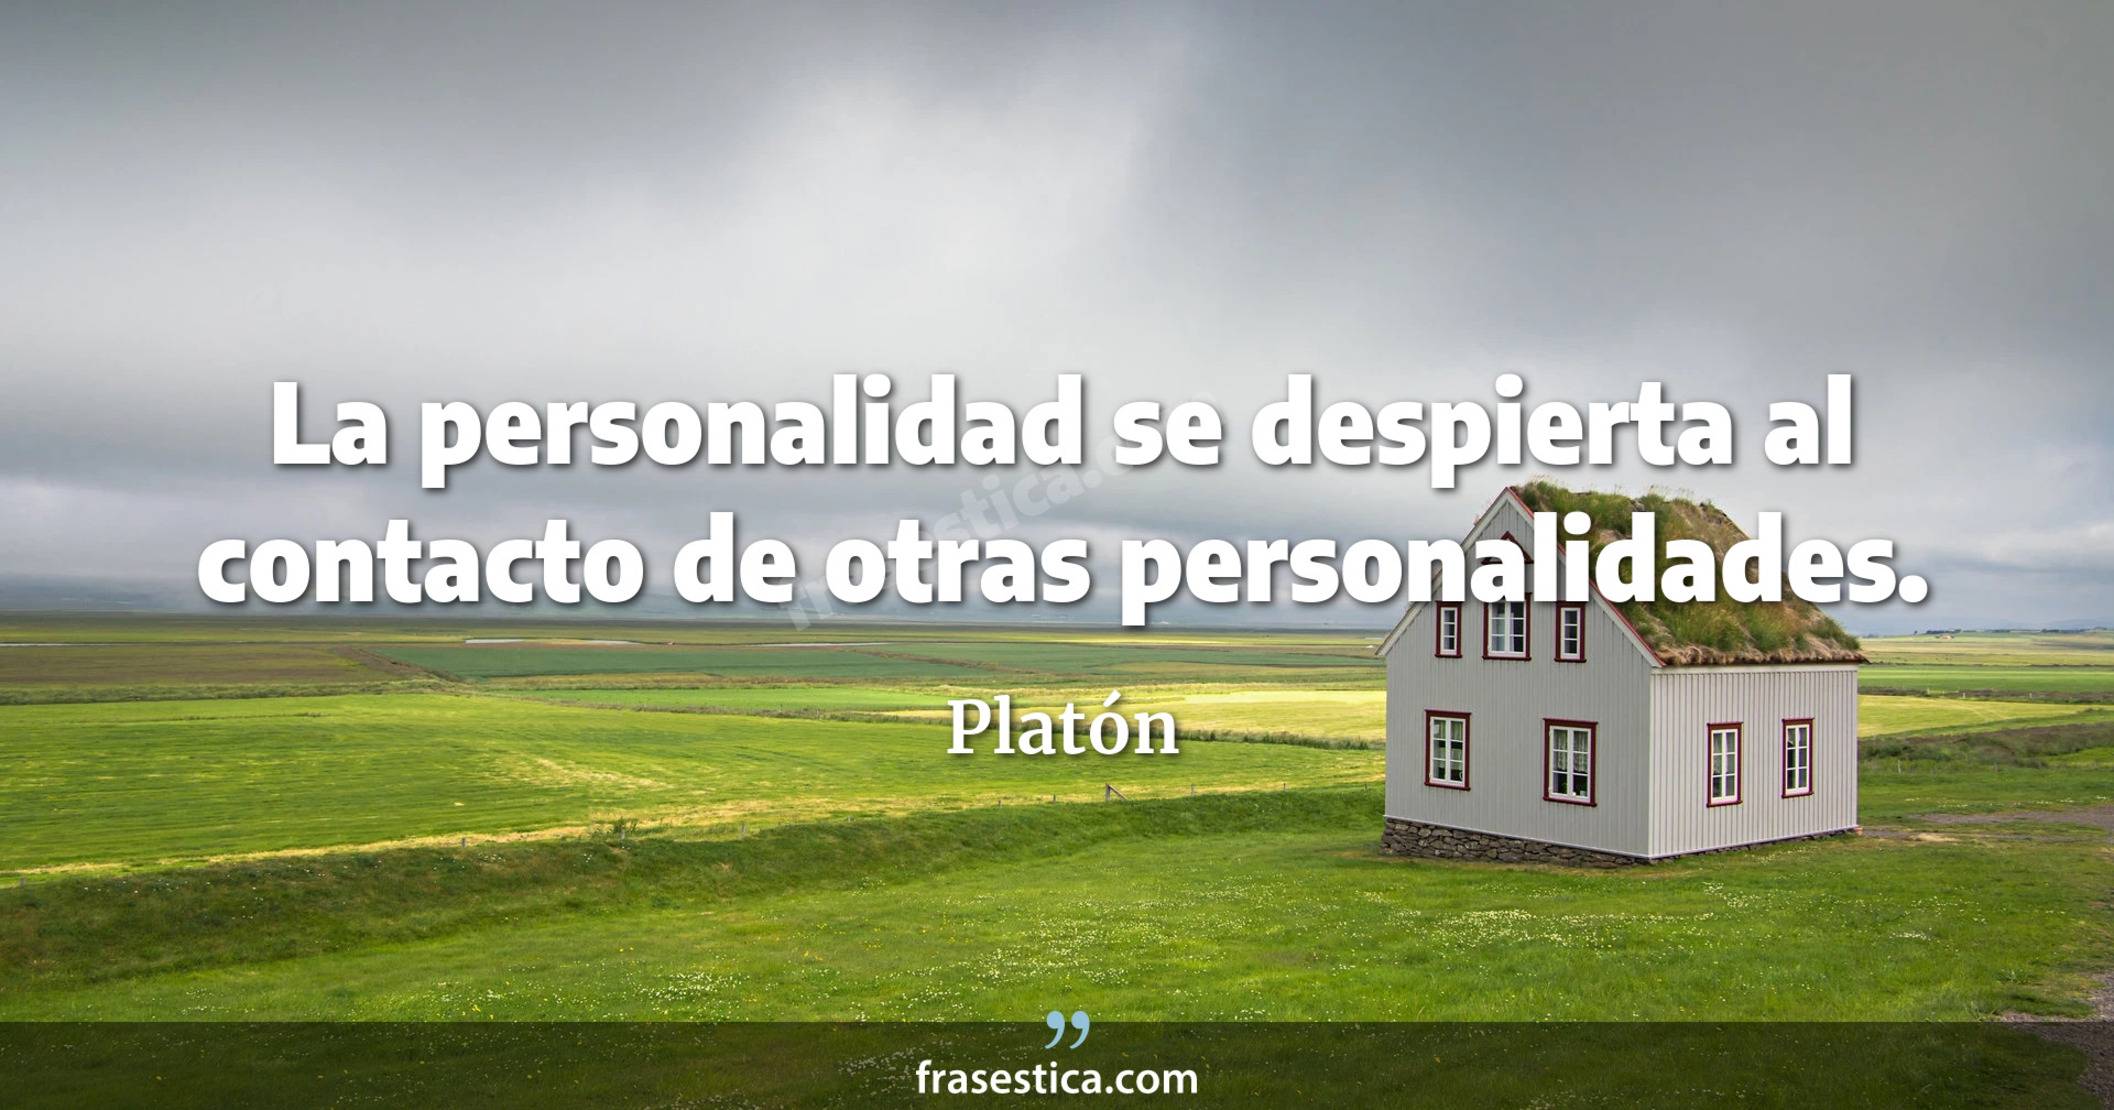 La personalidad se despierta al contacto de otras personalidades. - Platón